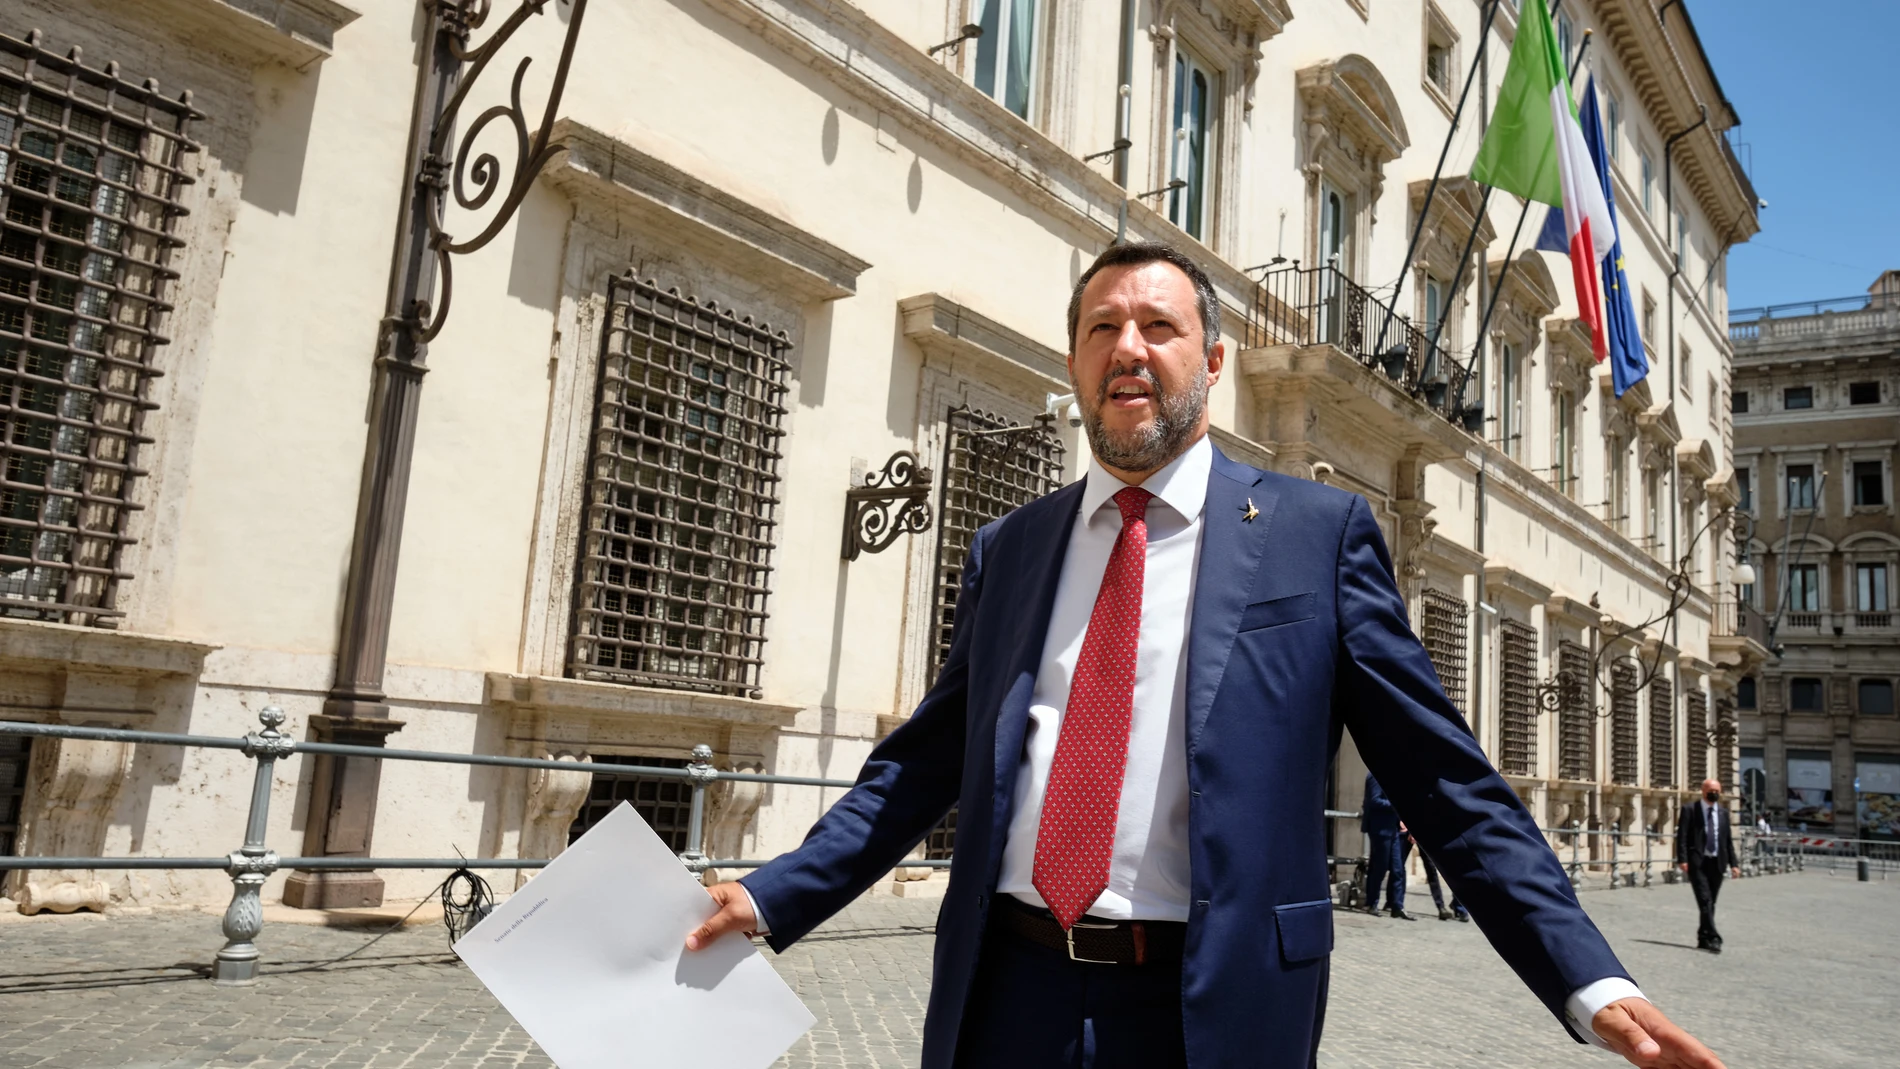 Salvini dijo que "como extrema ratio" ante una agresión la "defensa siempre es legítima". EP